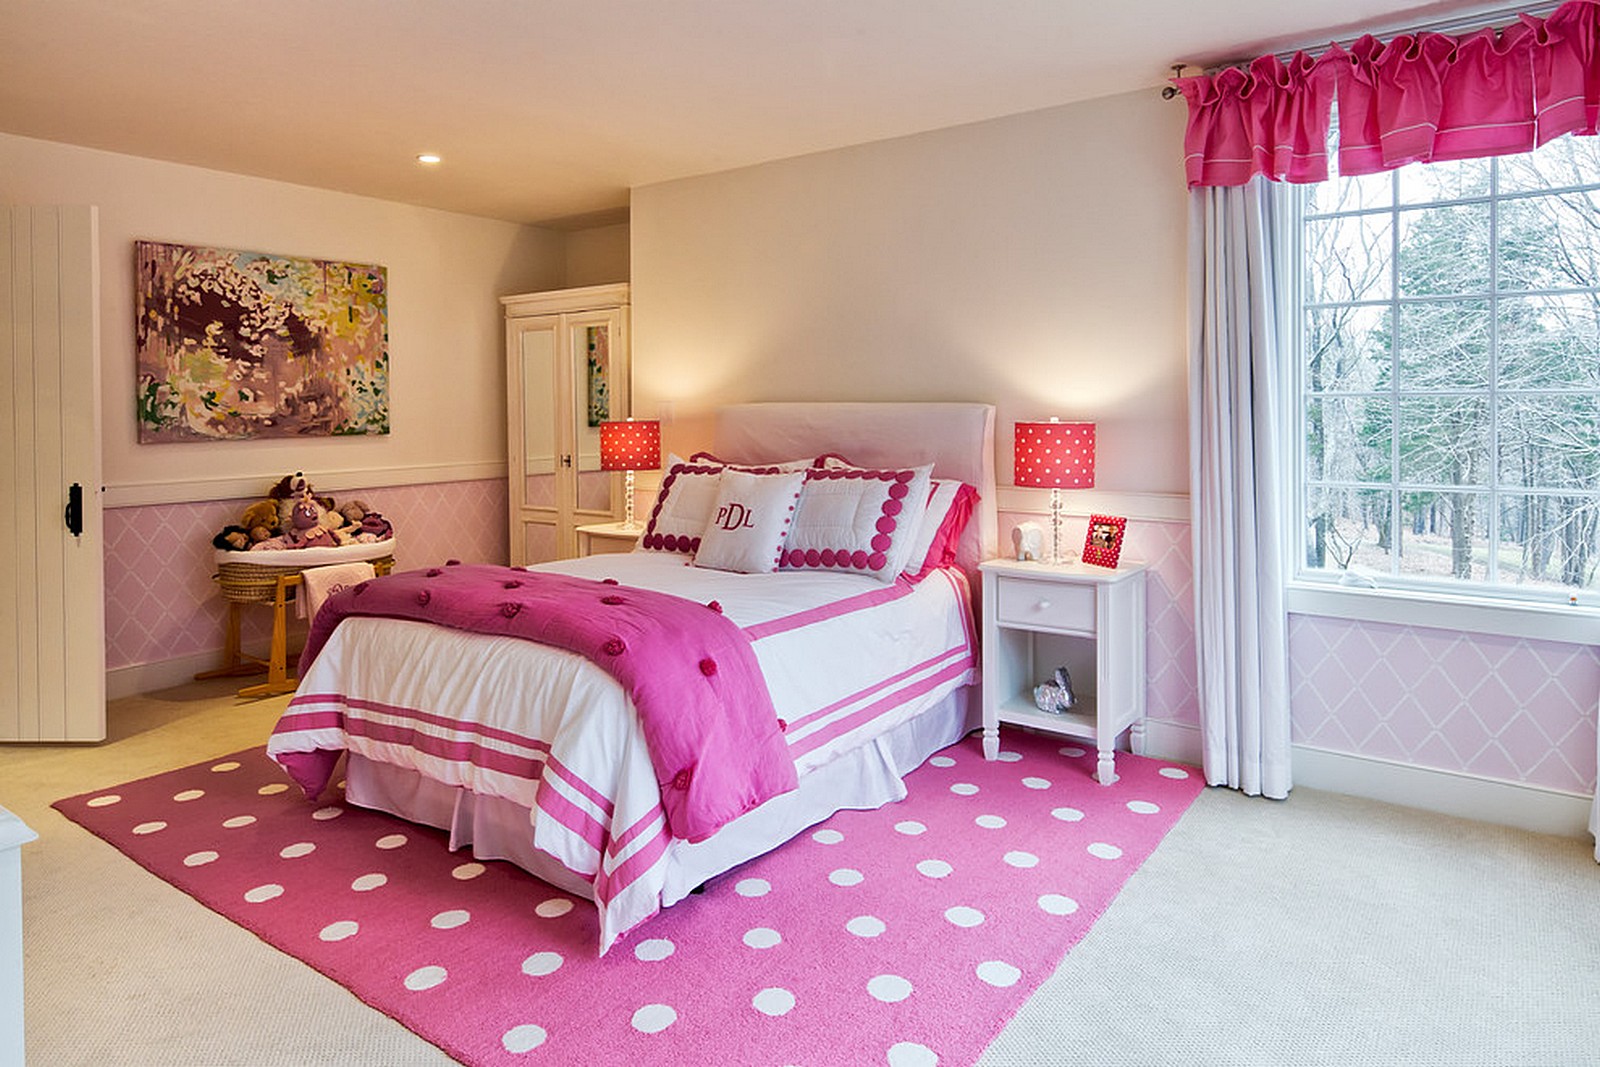 83 Kamar Tidur Anak Perempuan Minimalis Warna Pink Yang 